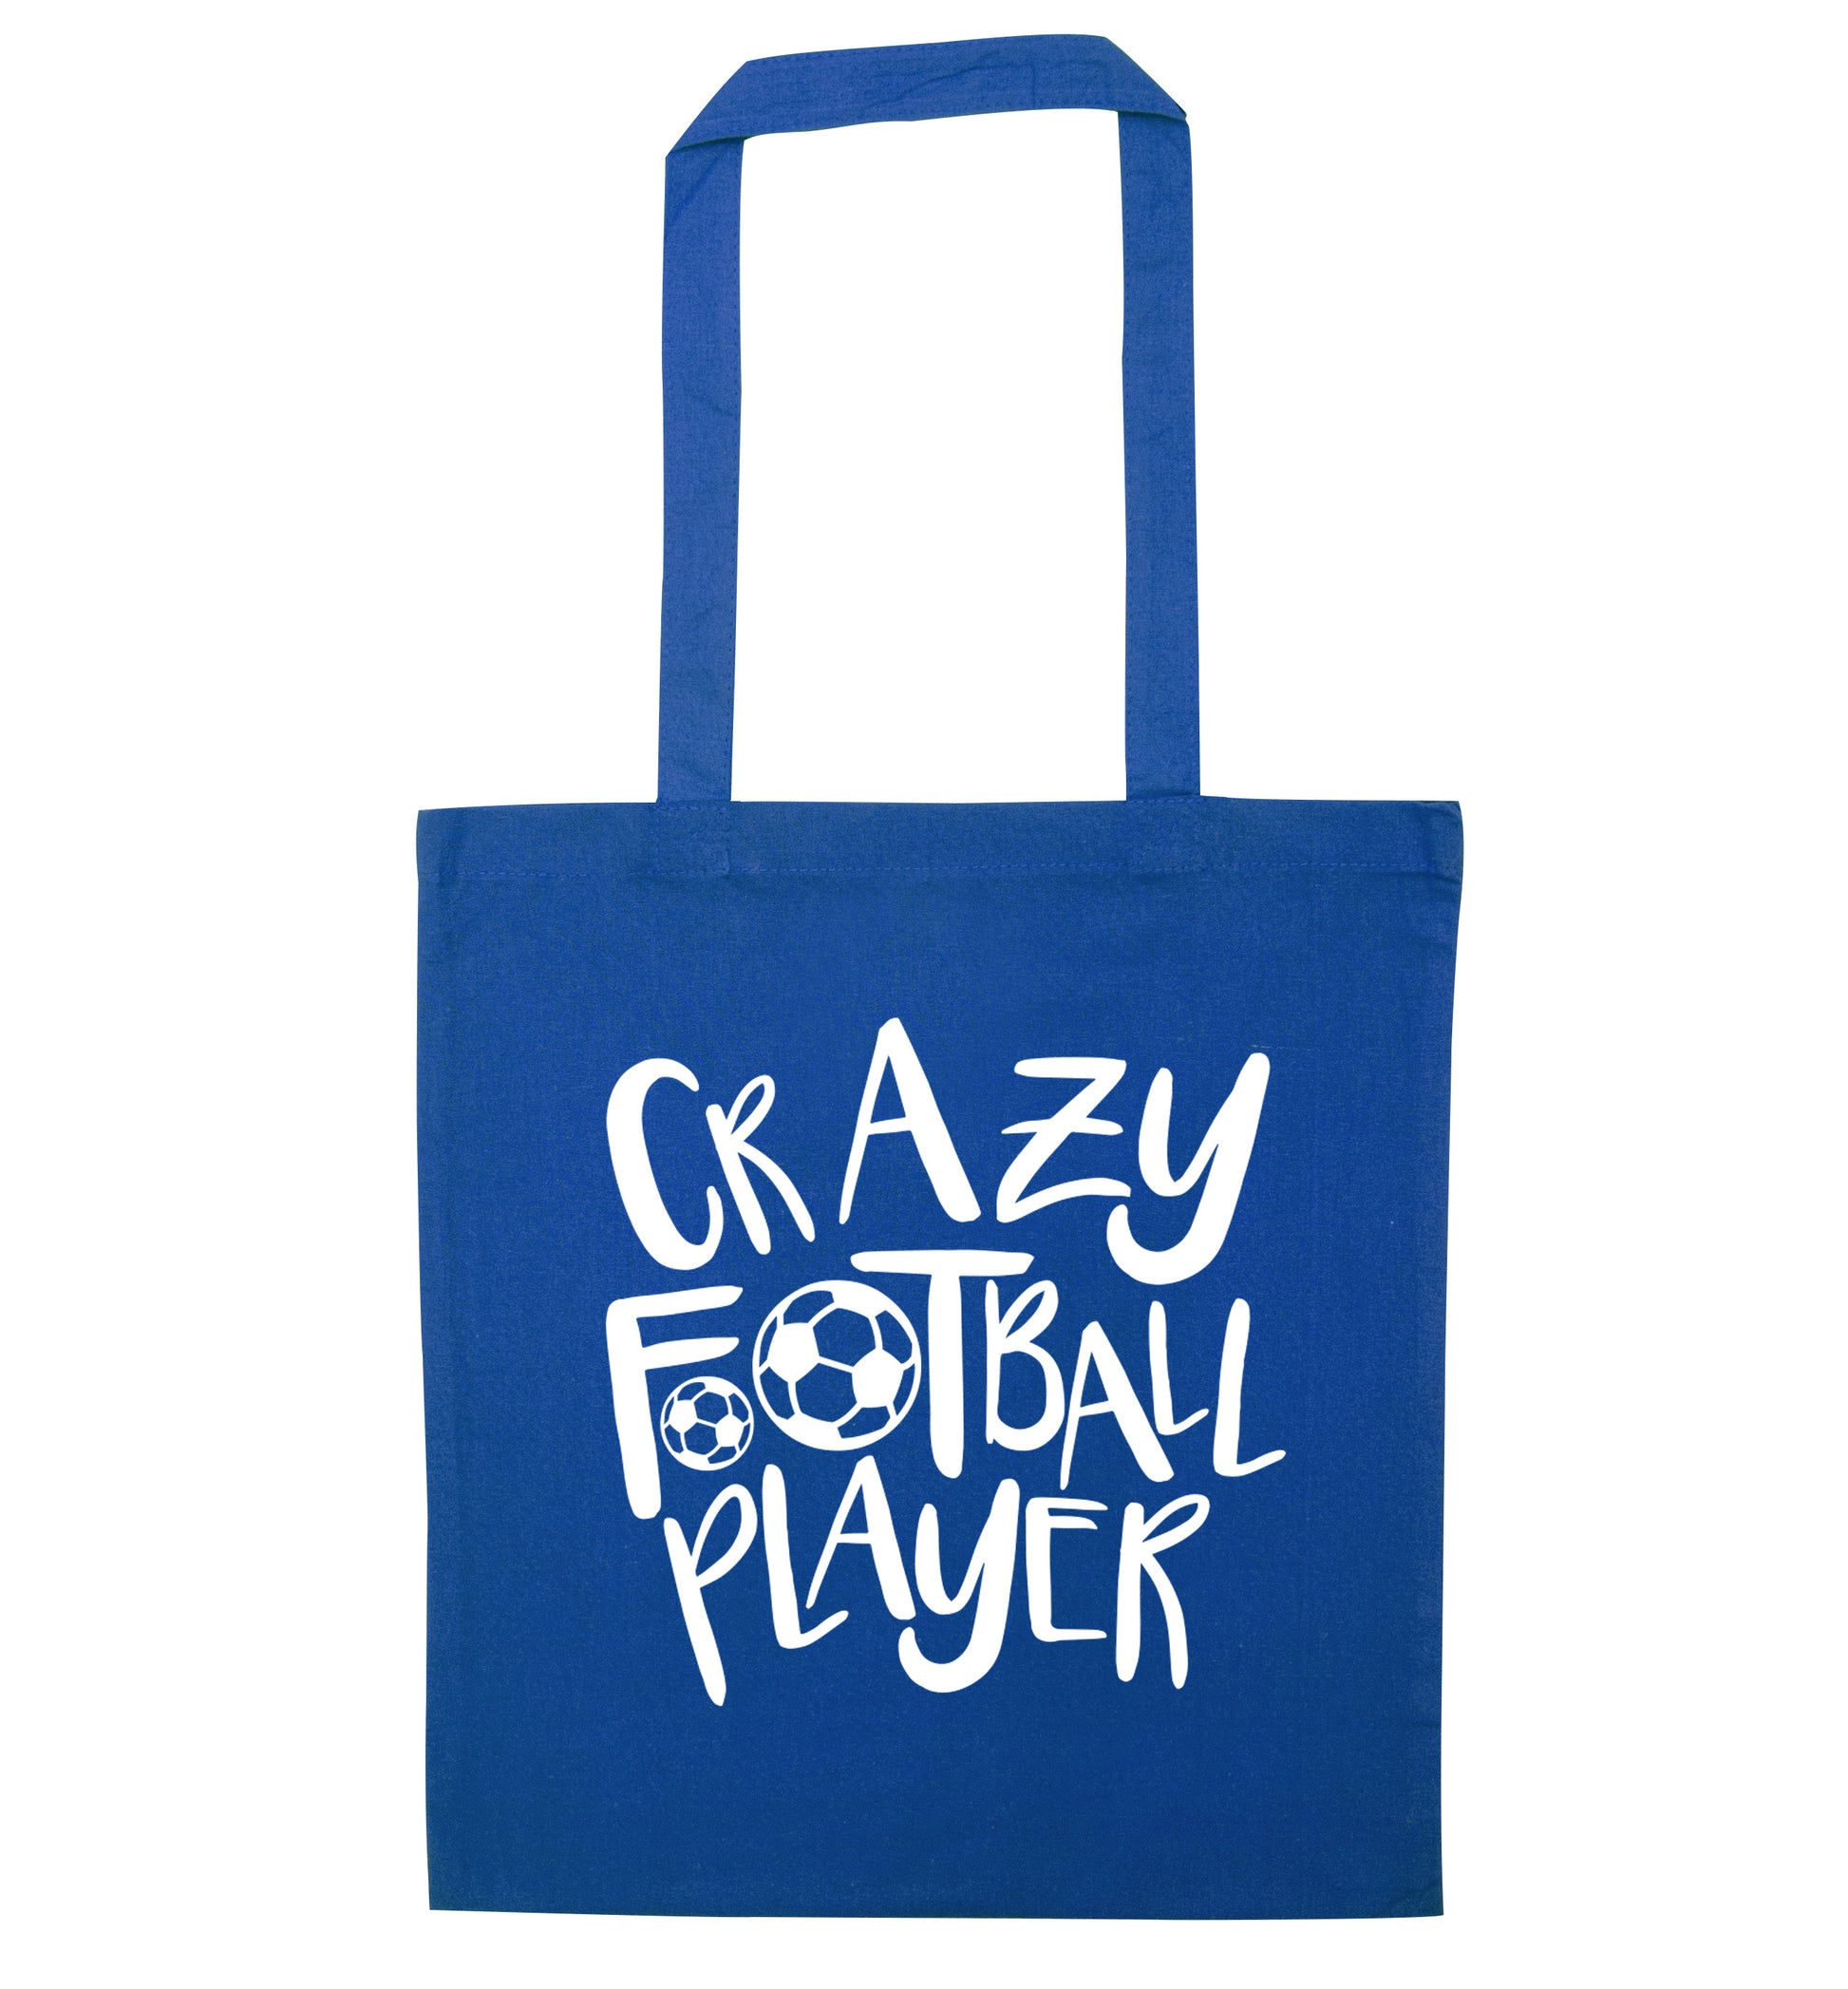 Crazy football player blue tote bag